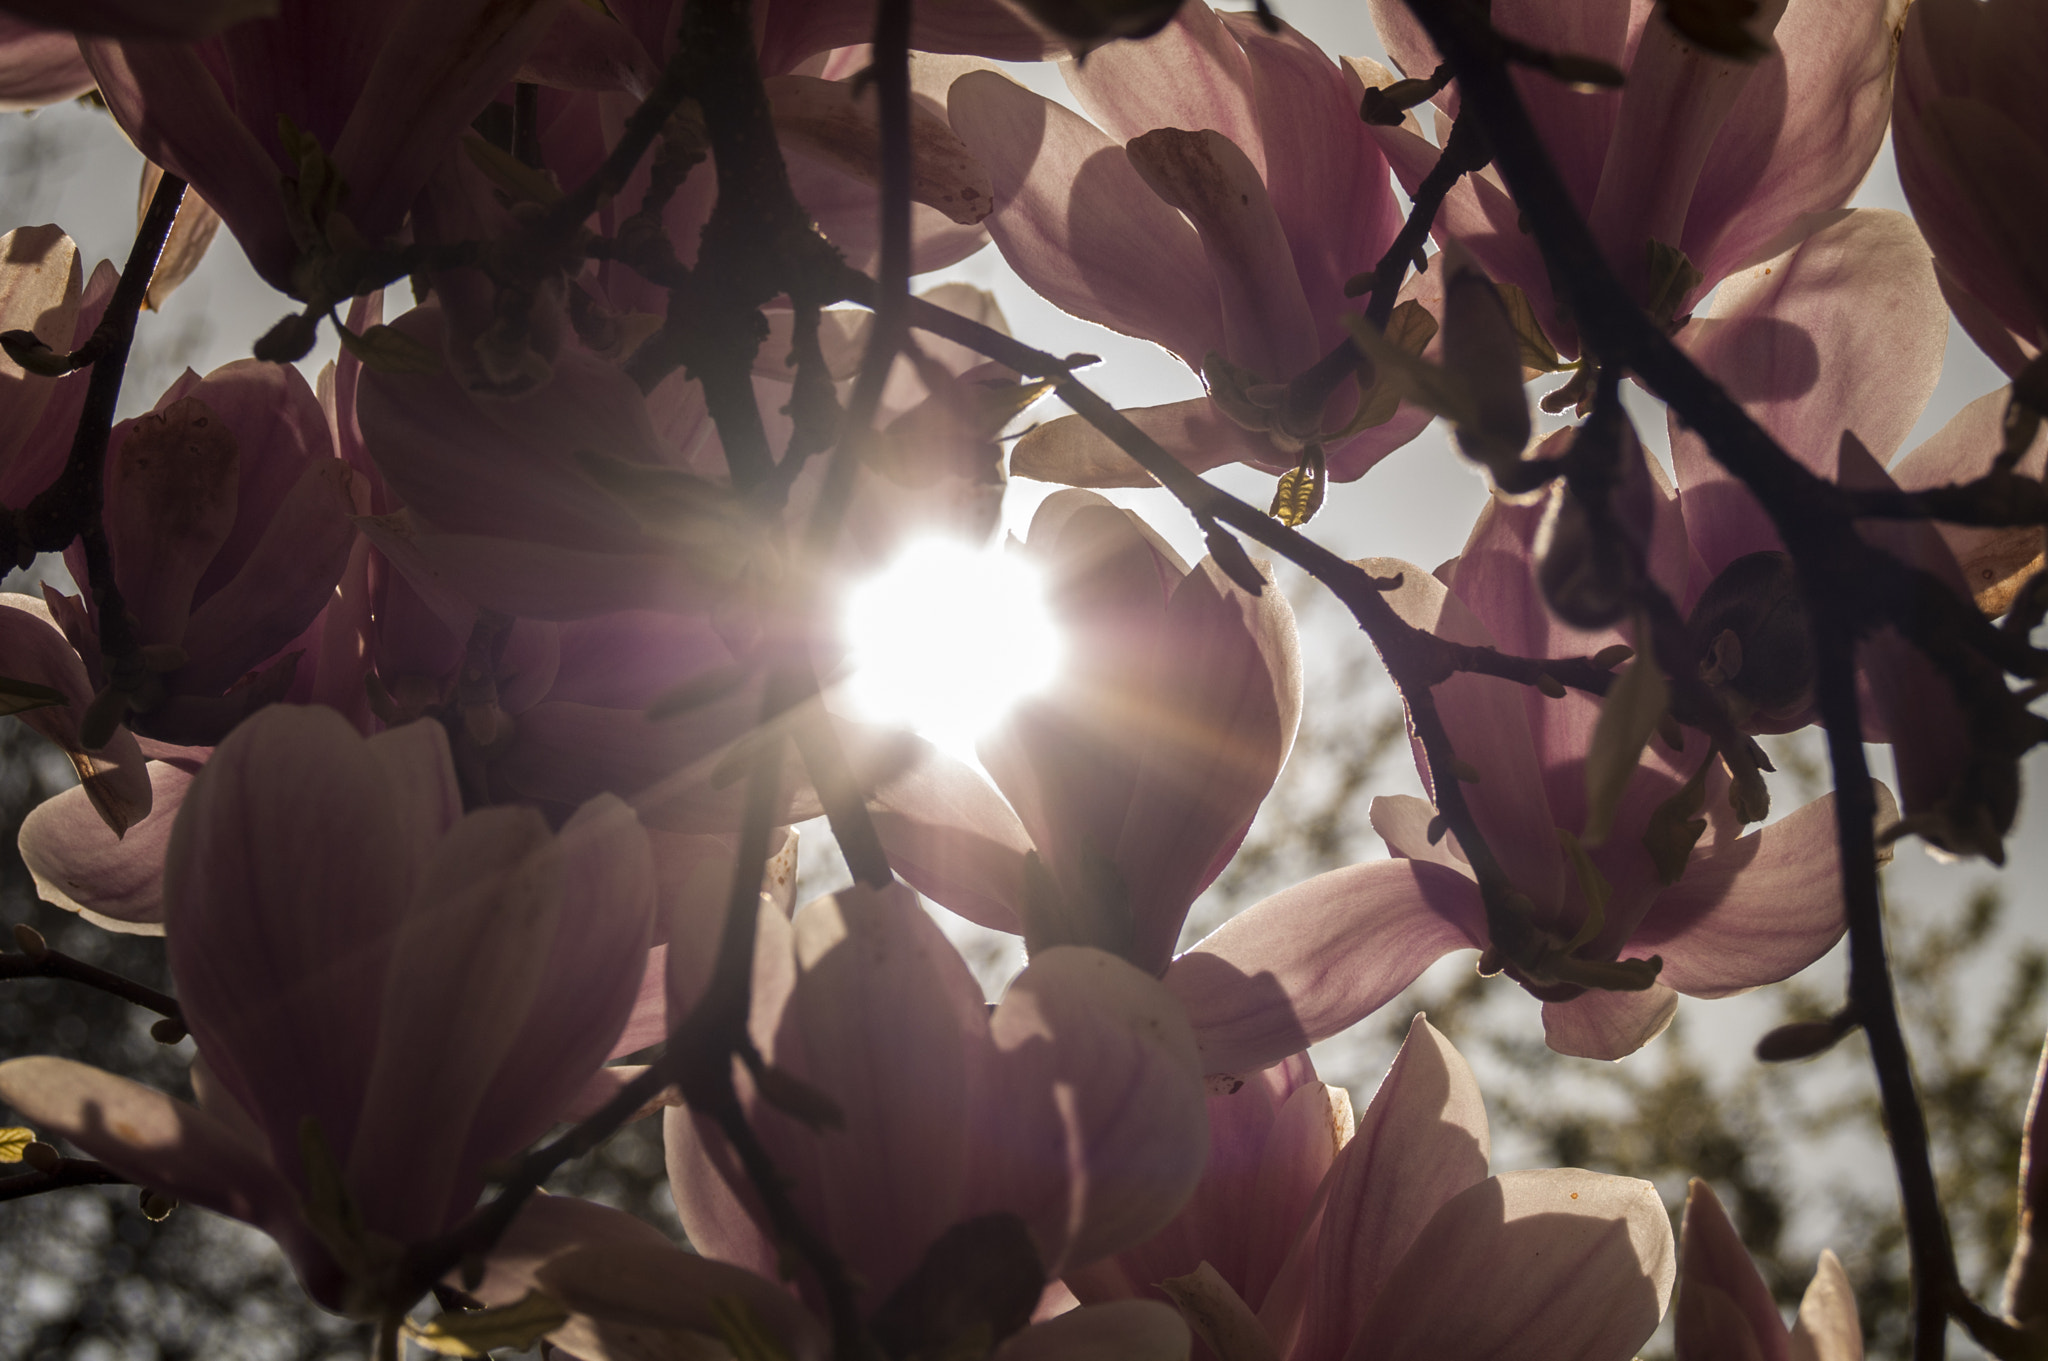 Nikon D300S + AF DX Fisheye-Nikkor 10.5mm f/2.8G ED + 2.8x sample photo. Spring color magnolia photography